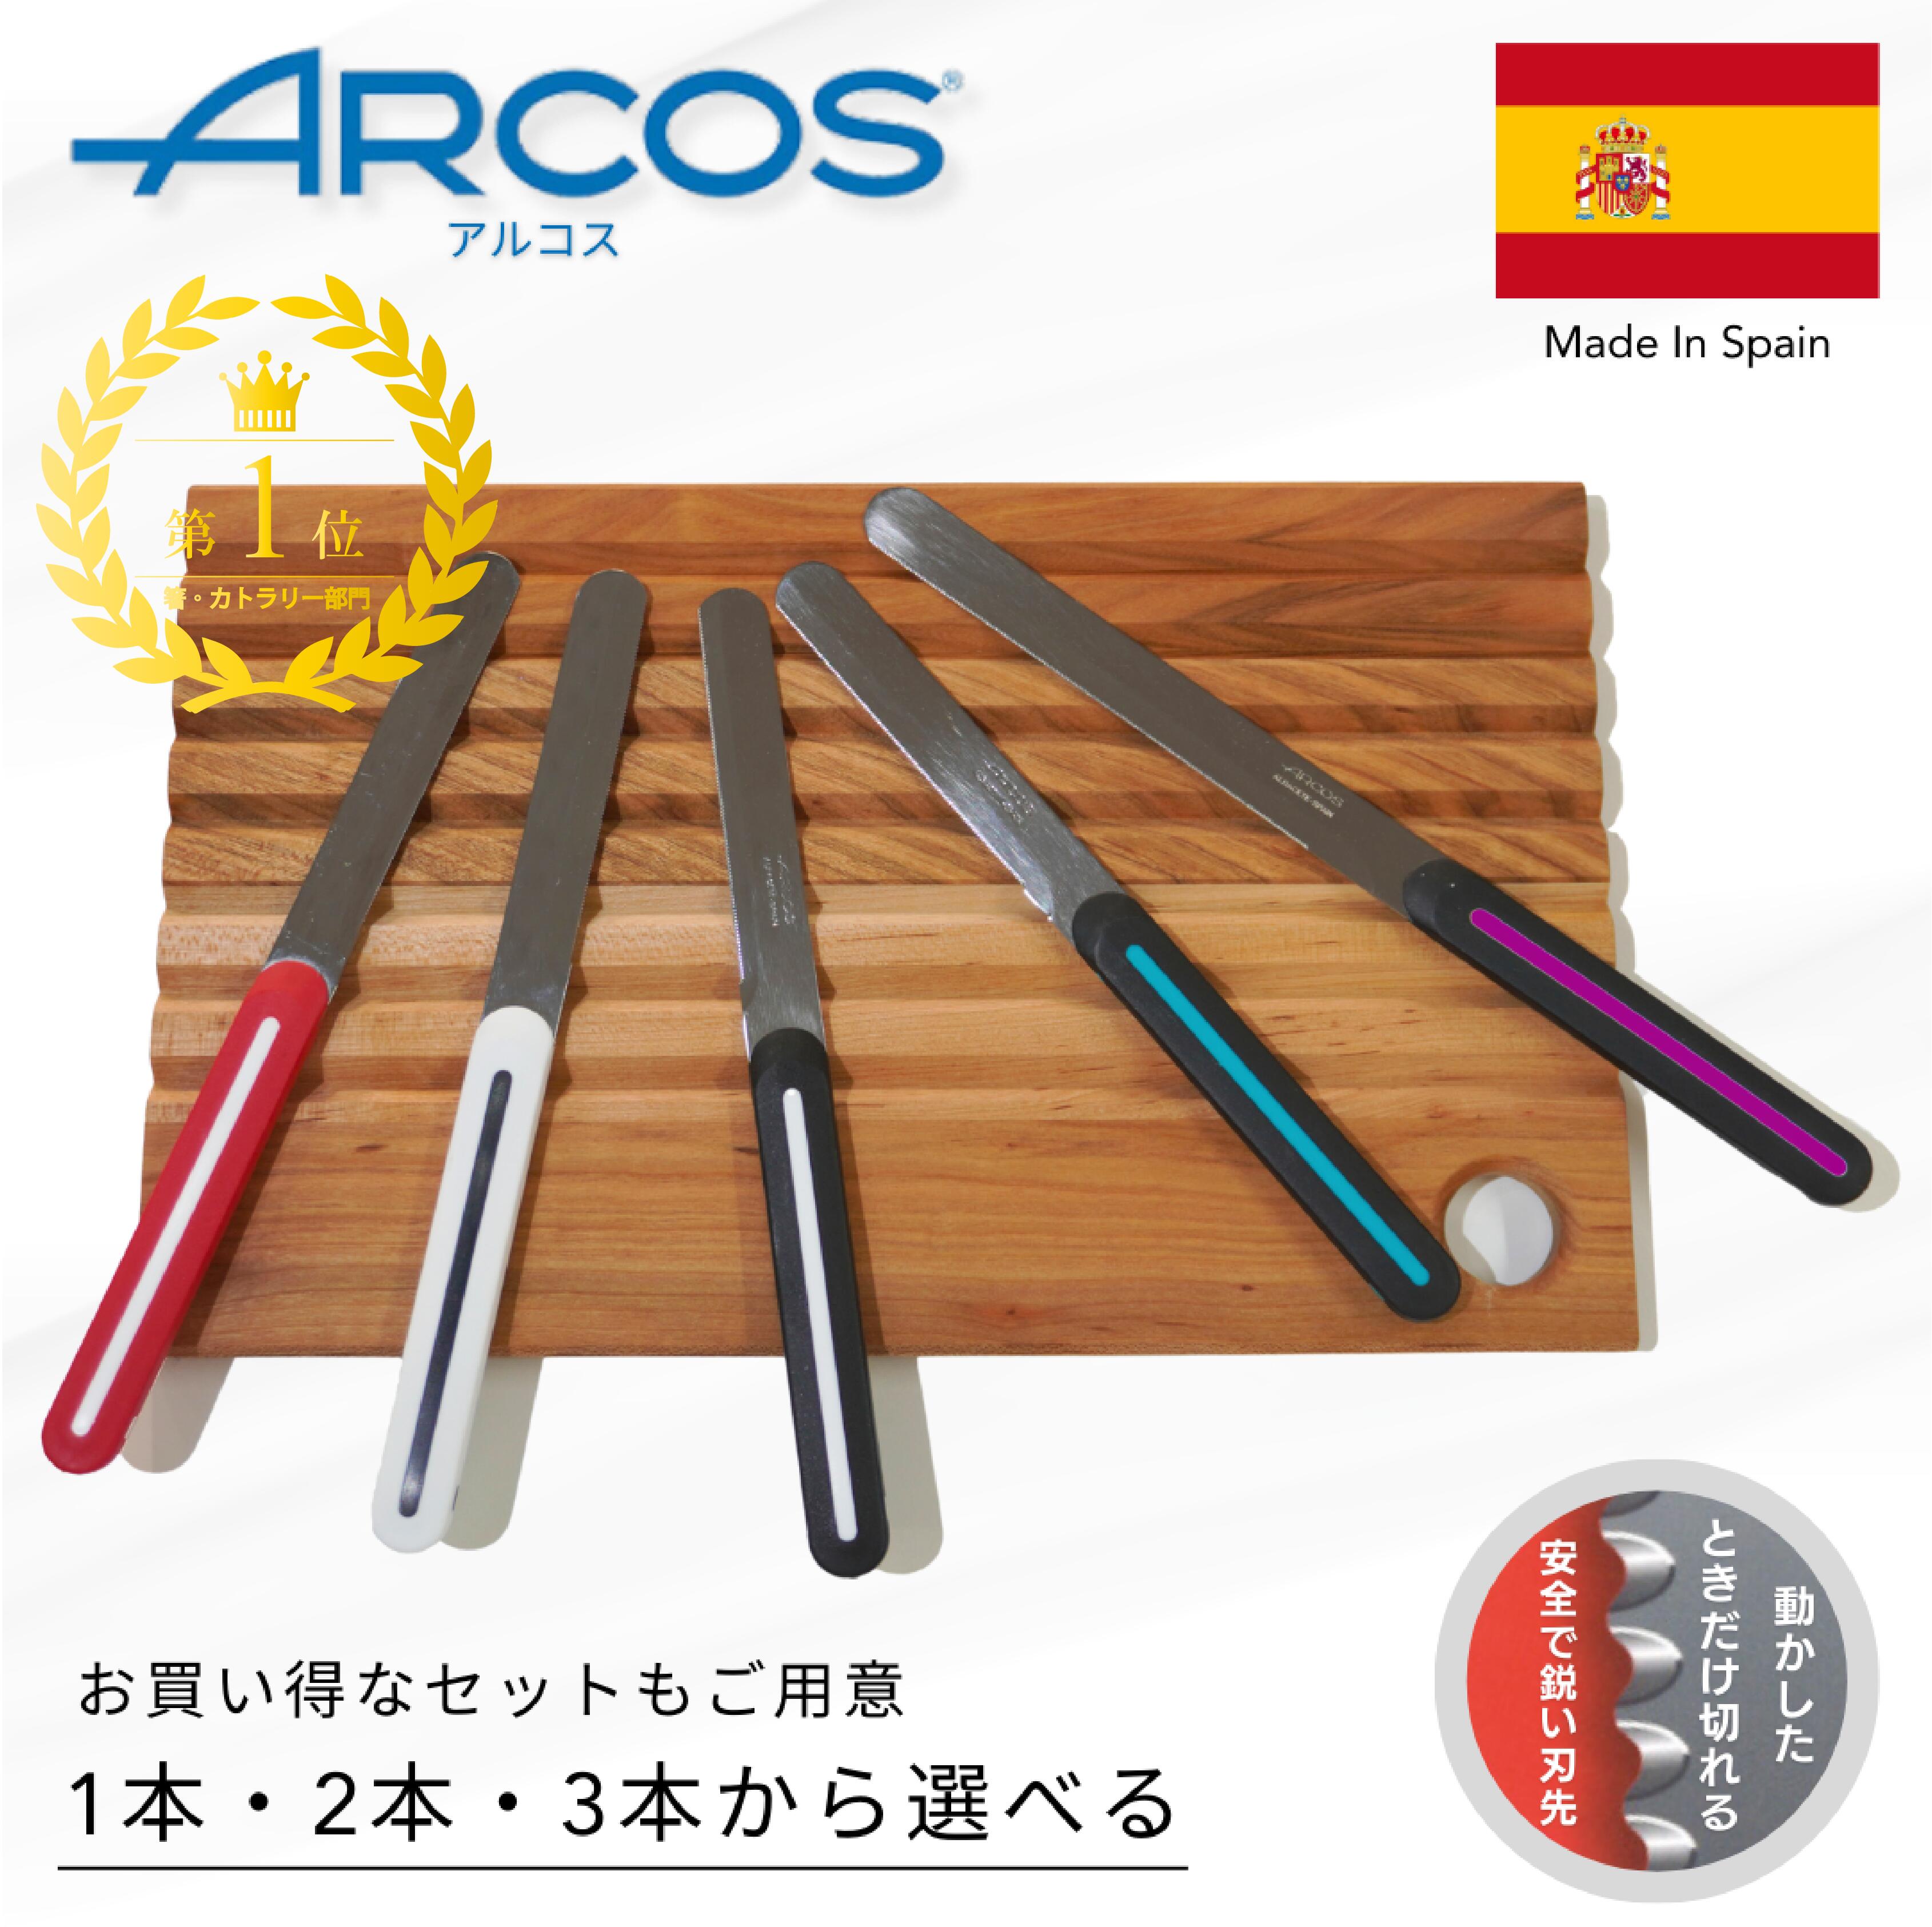 【ARCOS アルコス】テーブルナイフ 